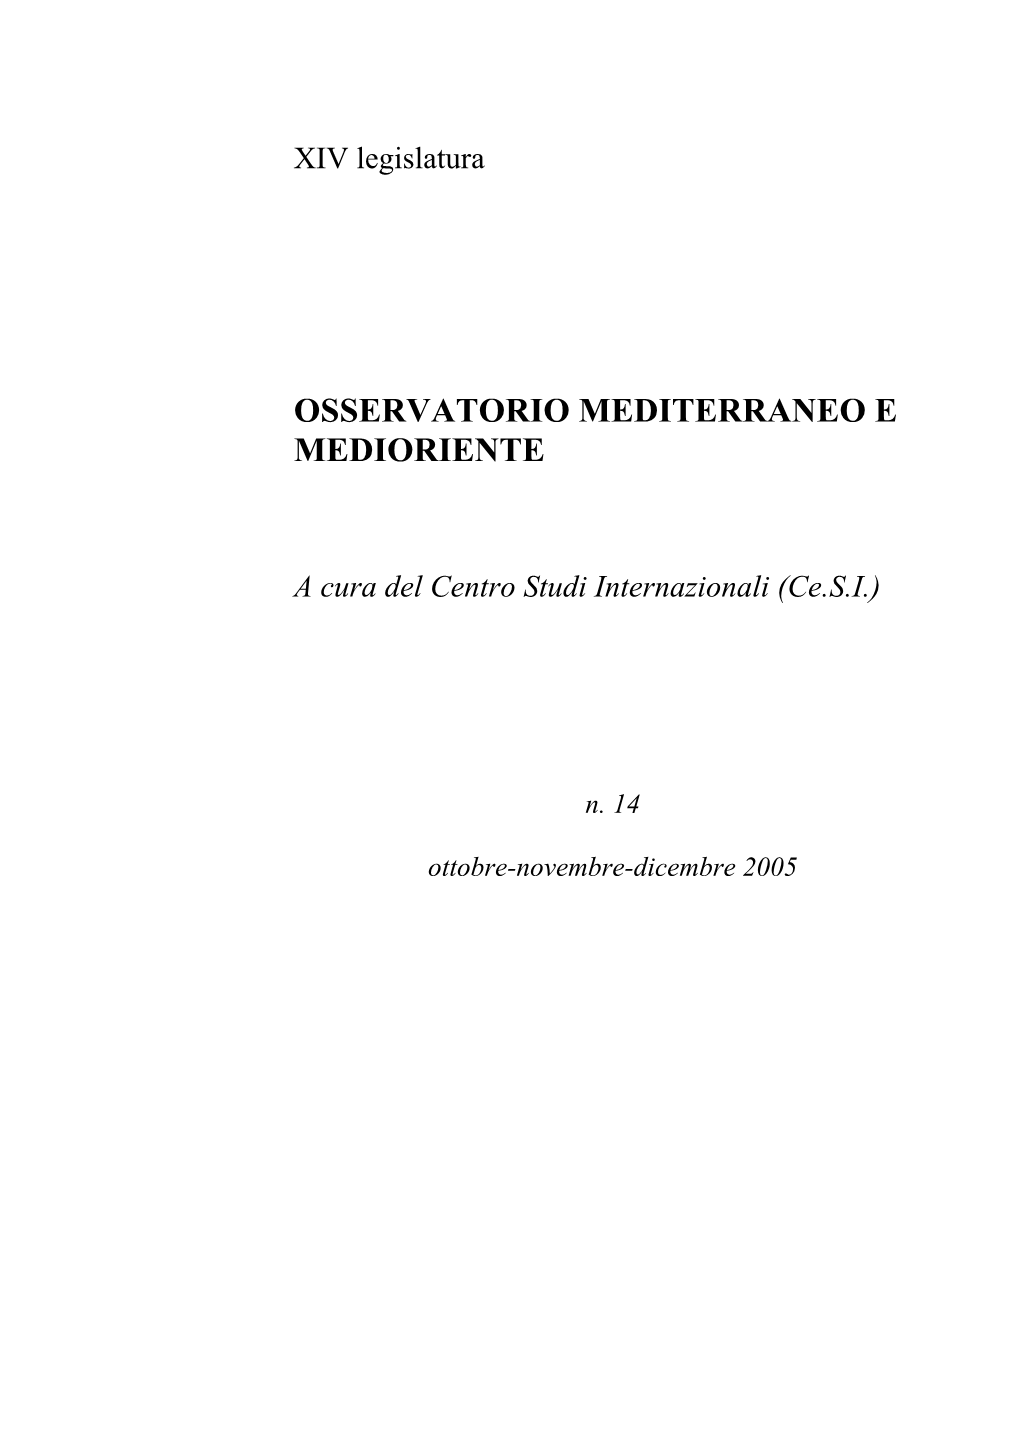 Osservatorio Mediterraneo E Medioriente